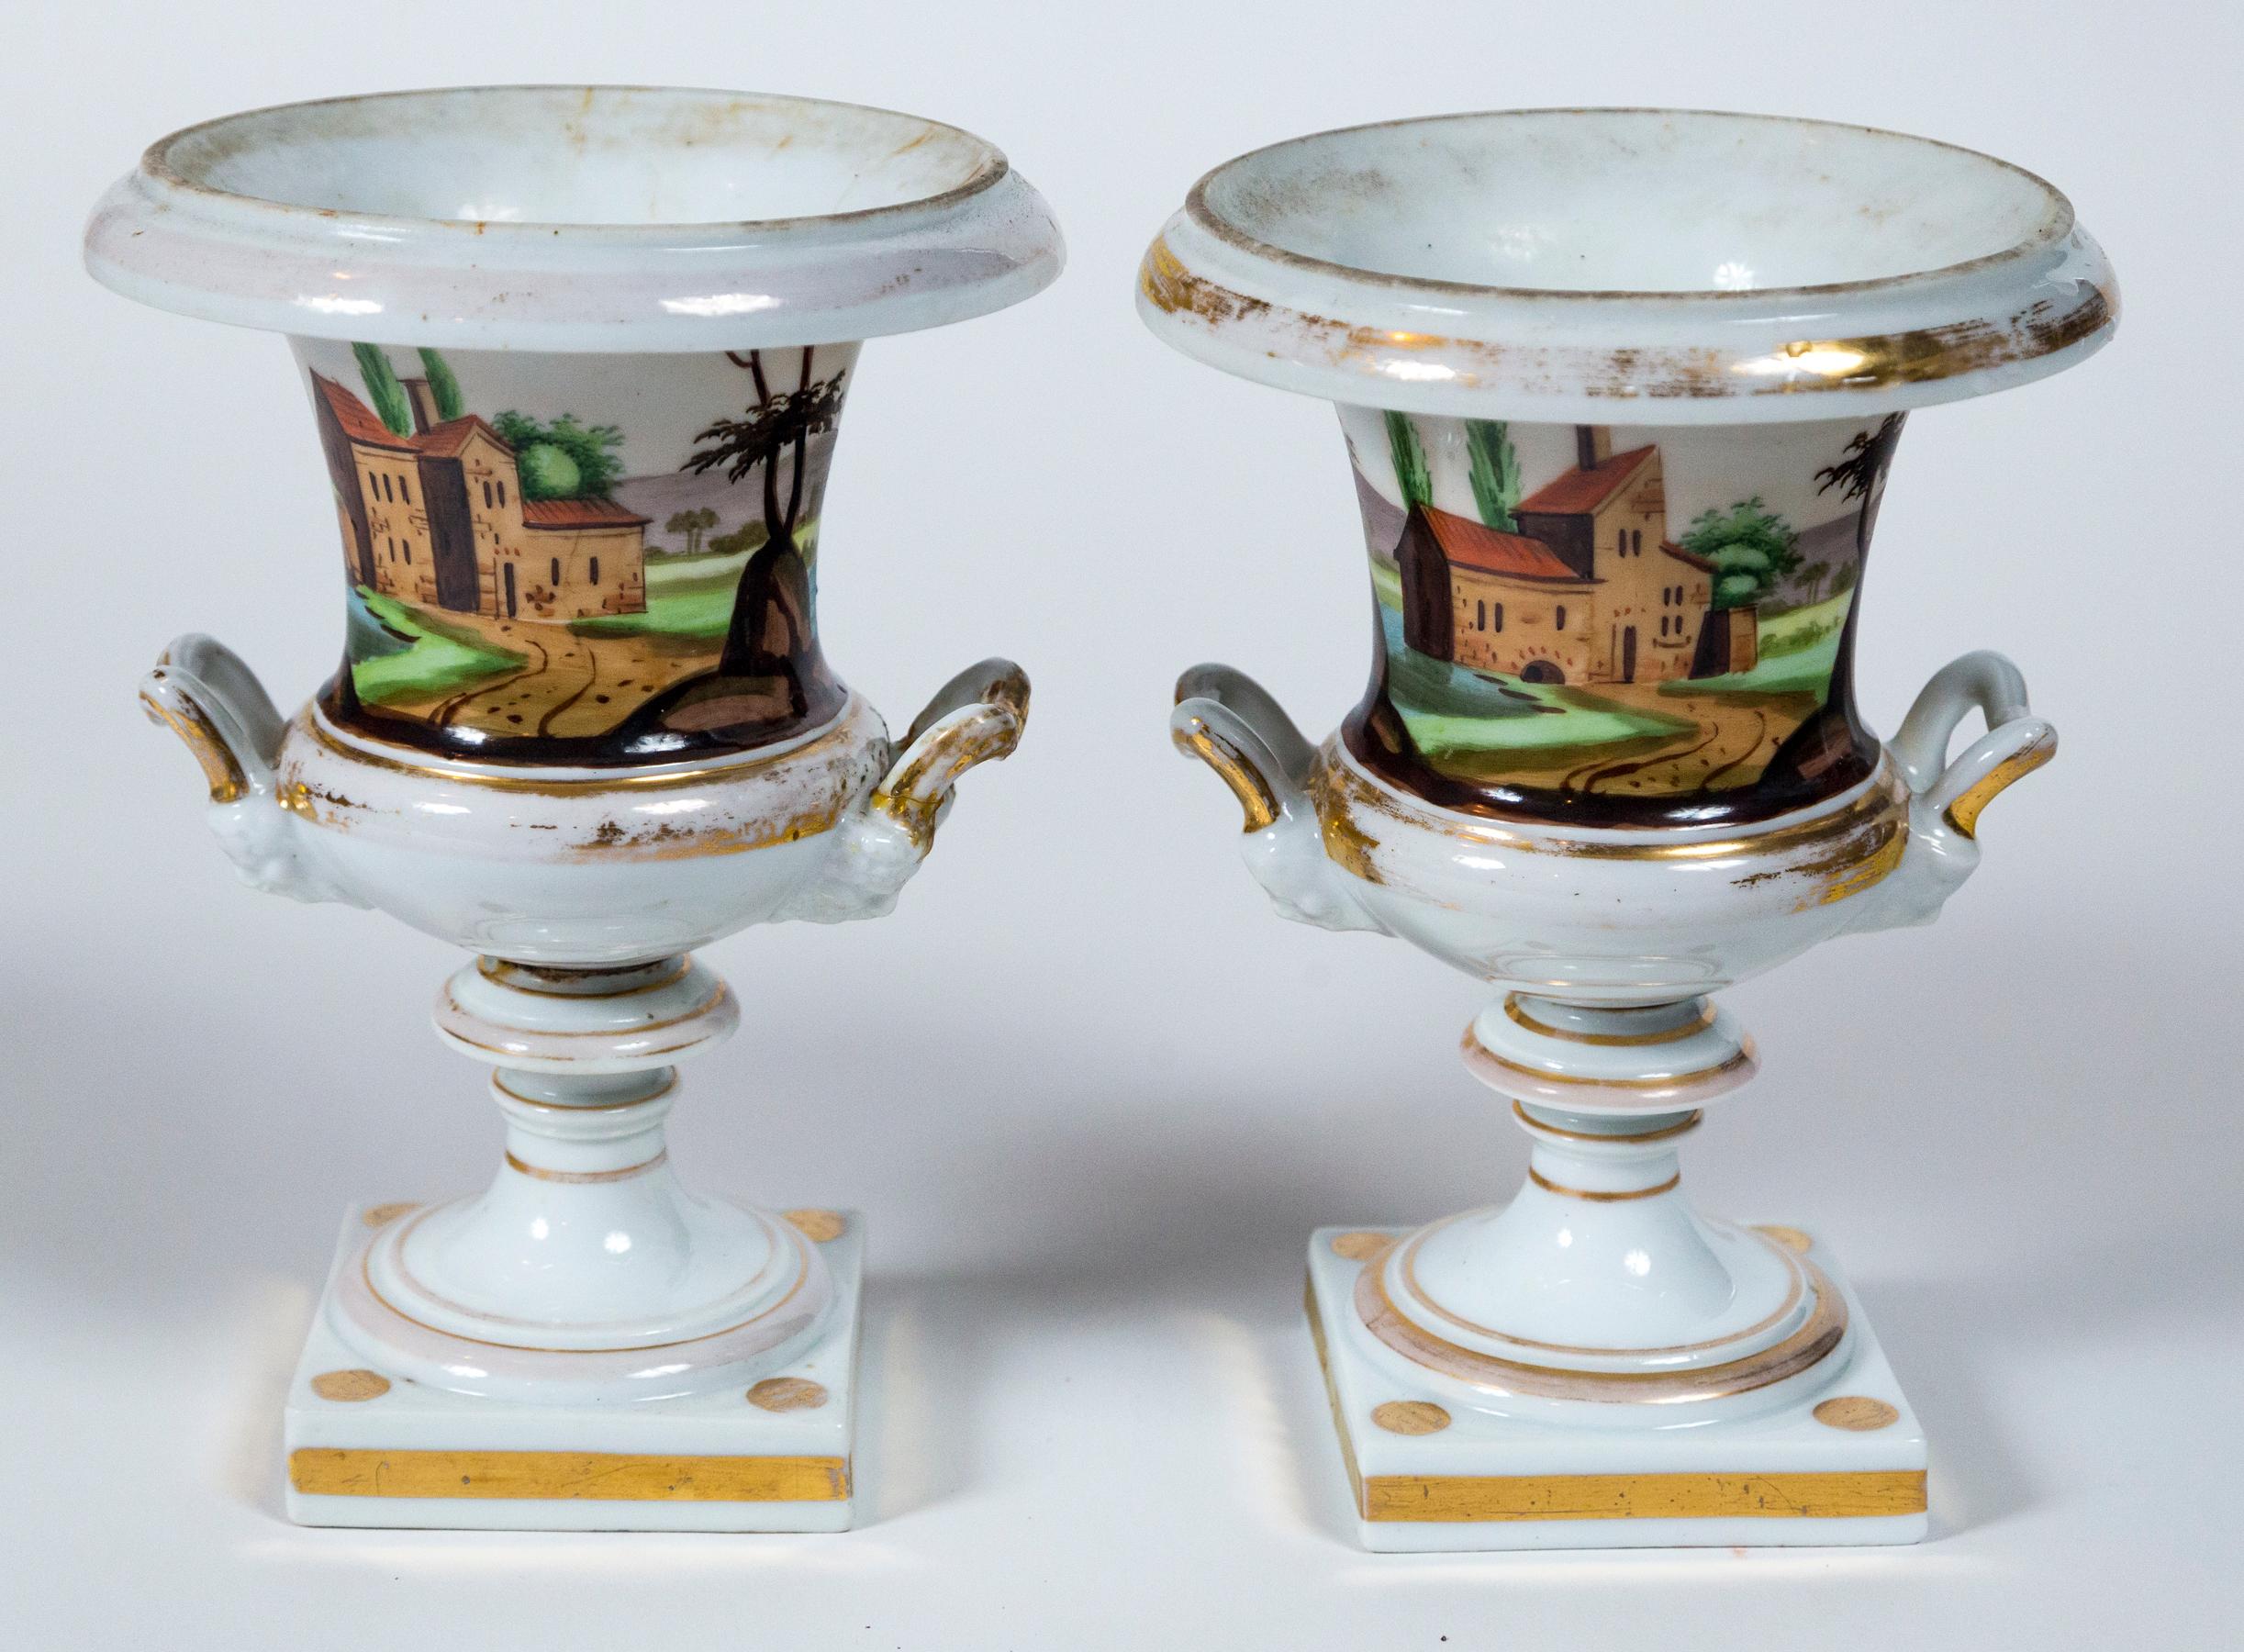 Paire d'urnes en porcelaine de Paris, France, XIXe siècle. Urnes de forme classique peintes à la main. Un paysage différent sur chaque urne. De jolies couleurs avec des bordures dorées.